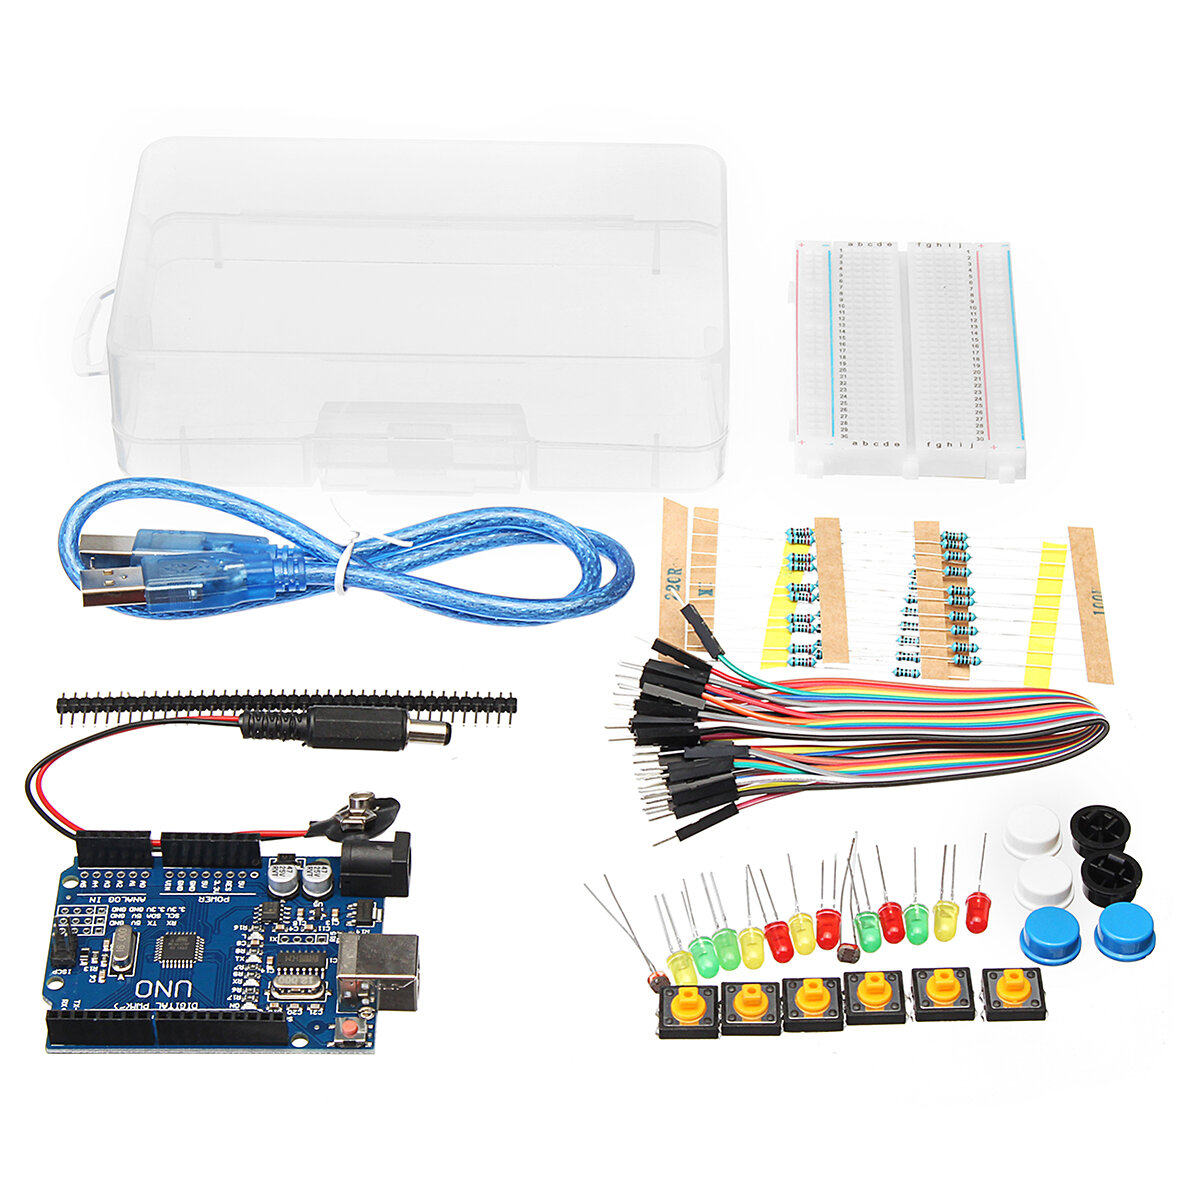 

Basic Starter Набор UNO R3 Mini Макетная LED Jumper Провод Кнопка с Коробка Для Geekcreit для Arduino - продукты, которы